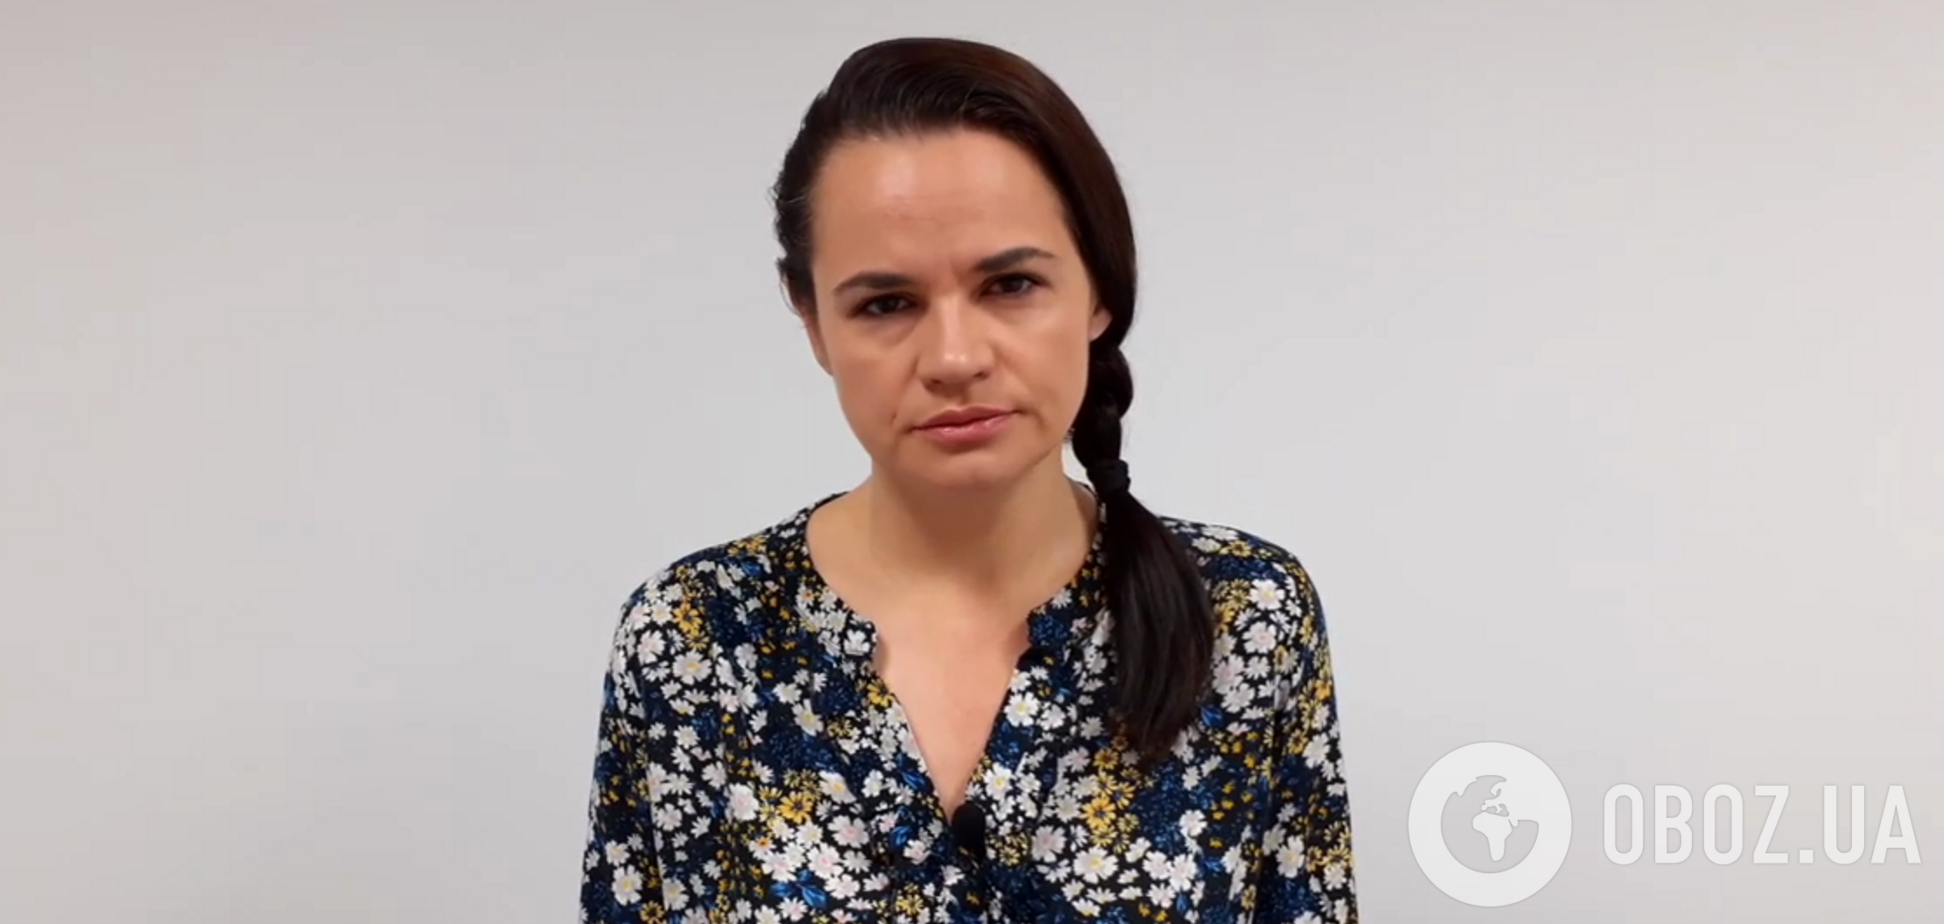 Тихановська записала відеозвернення в день народження арештованого чоловіка